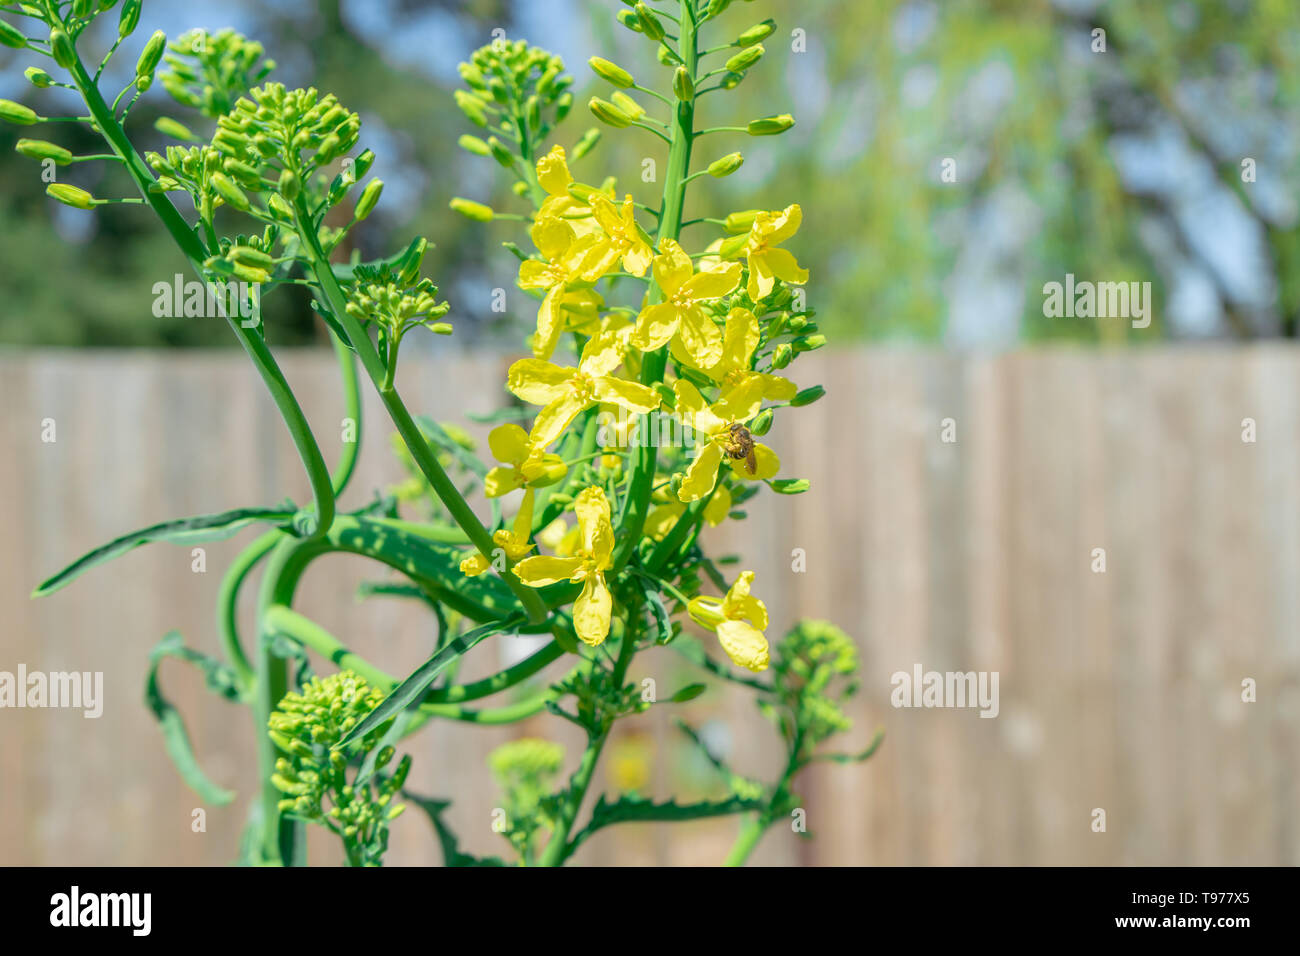 Kale zweijährige Pflanze Verschraubung (d. h. gehen zu Saatgut) im Frühjahr. Bild zeigt eine Biene Bestäuben der gelben kale Blumen in einem Garten. Stockfoto